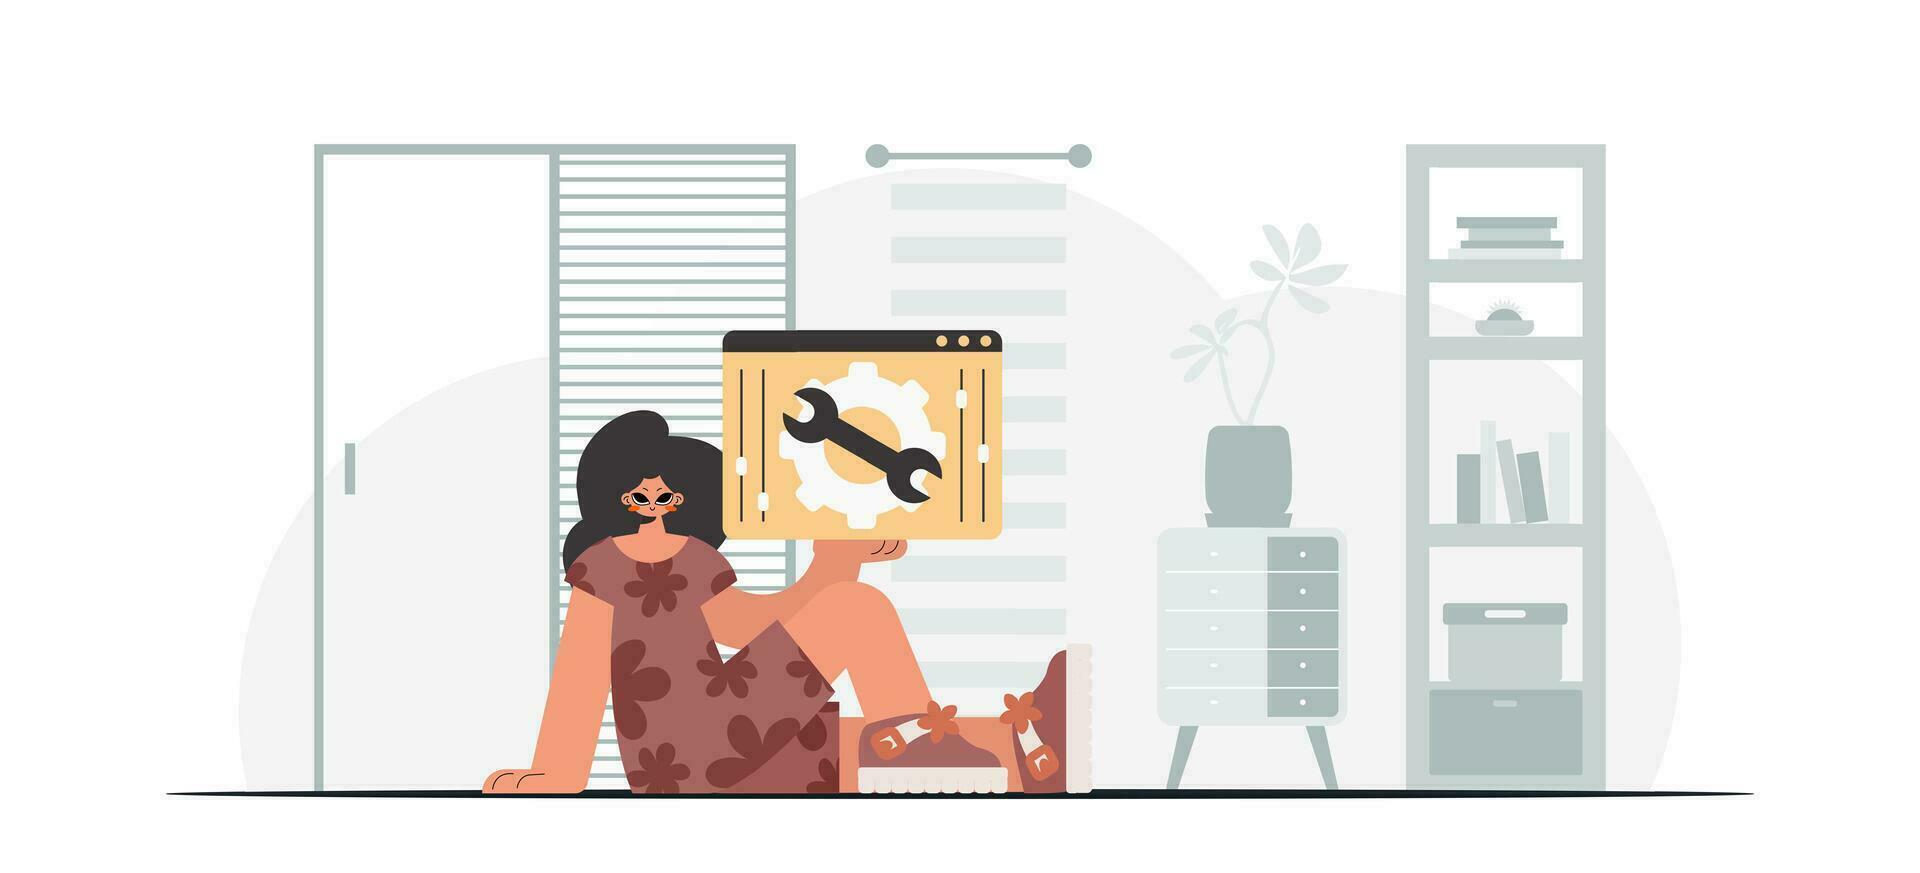 el energizado mujer es participación un navegador ventana con engranajes seo y web analizando punto. de moda estilo, vector ilustración